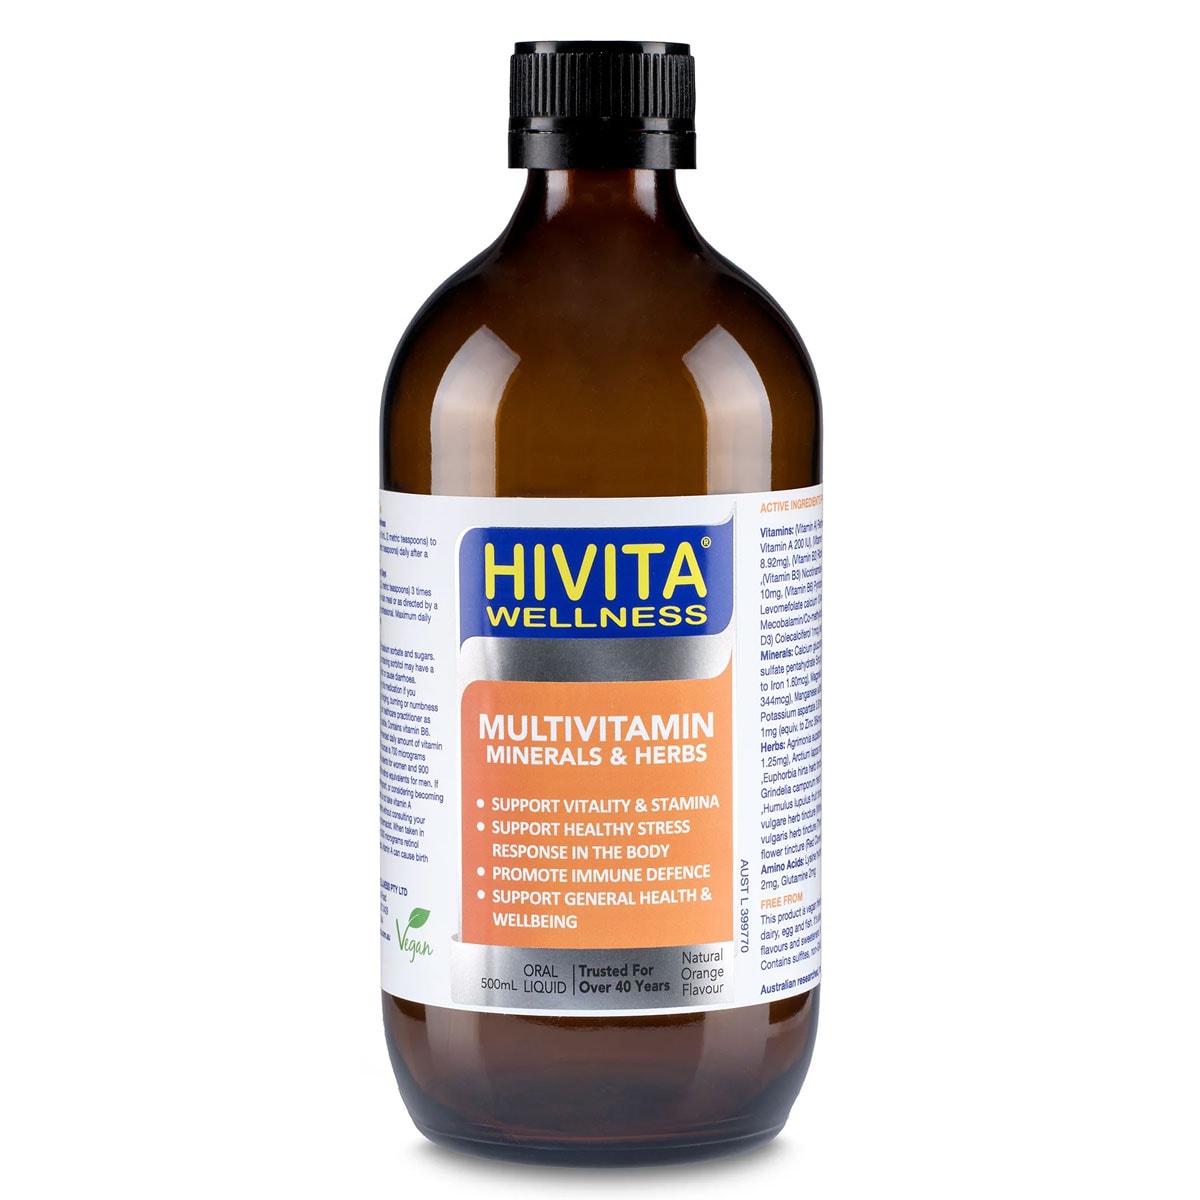 HIVITA Wellness Multivitamin Minerals & Herbs 500ml